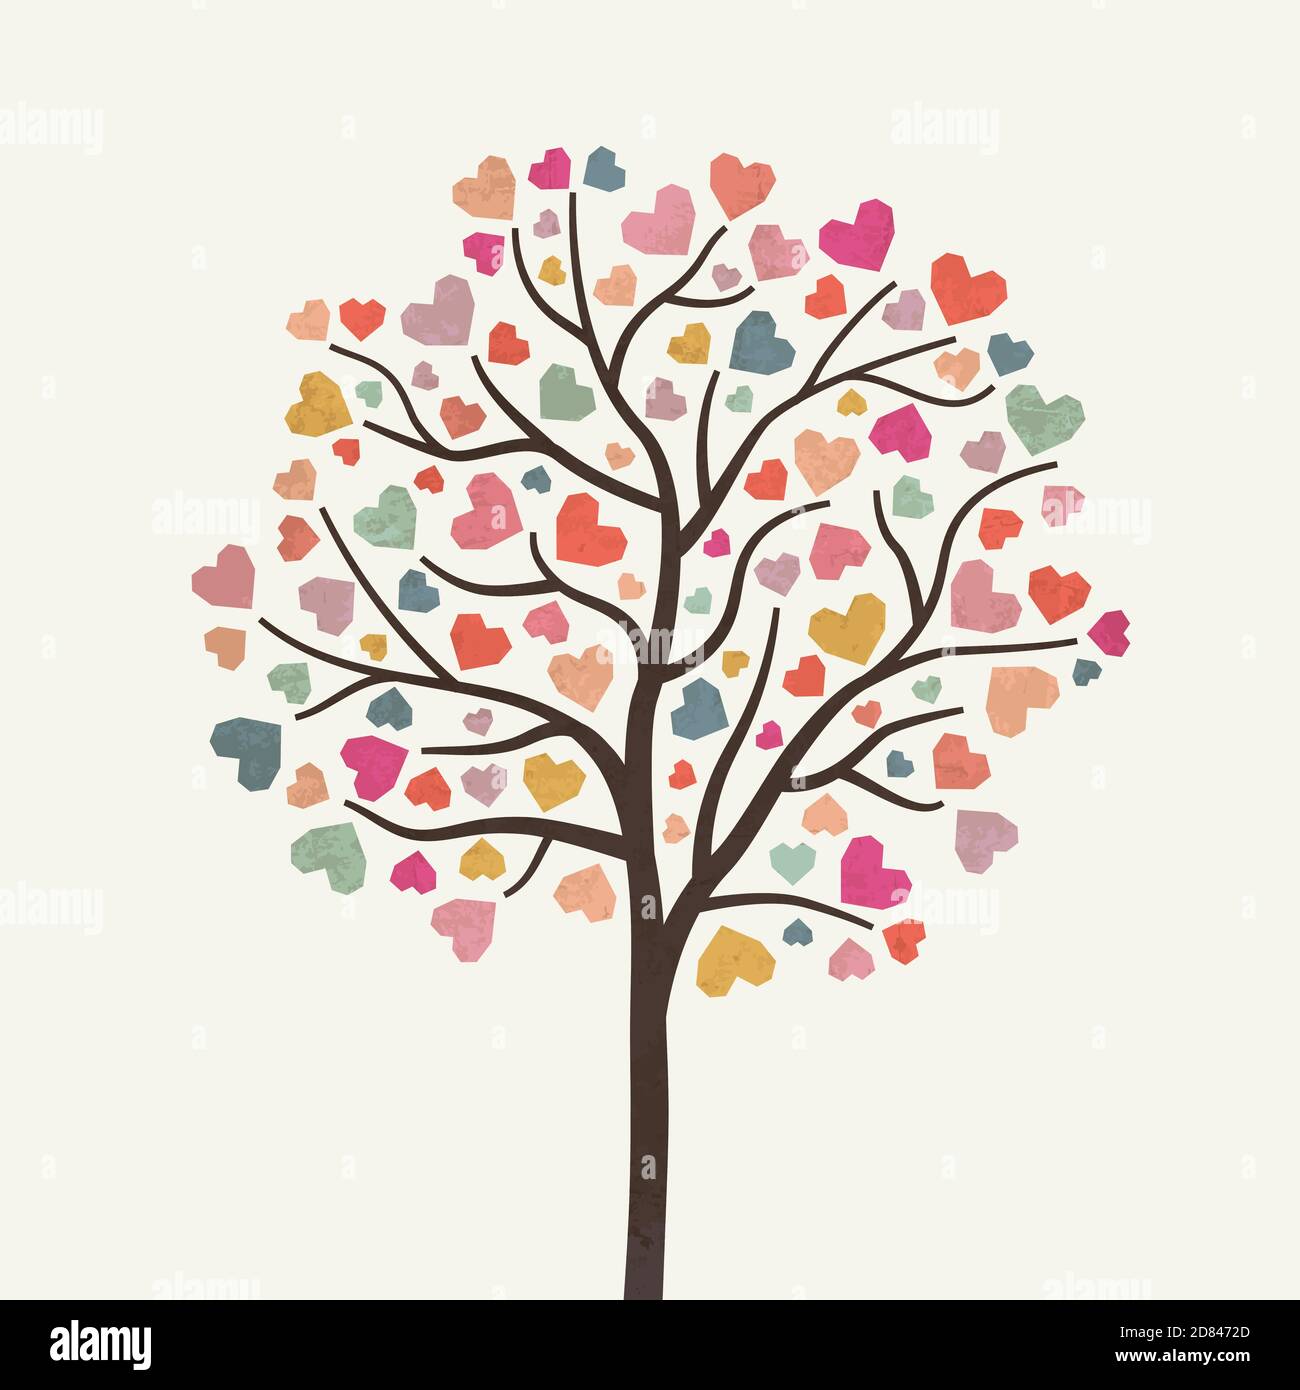 Charity Illustration mit Baum von Herzen geschaffen. Wohltätigkeitsorganisation, Hilfe. Spenden, Geld geben. Vektorgrafik, flaches Design. Stock Vektor